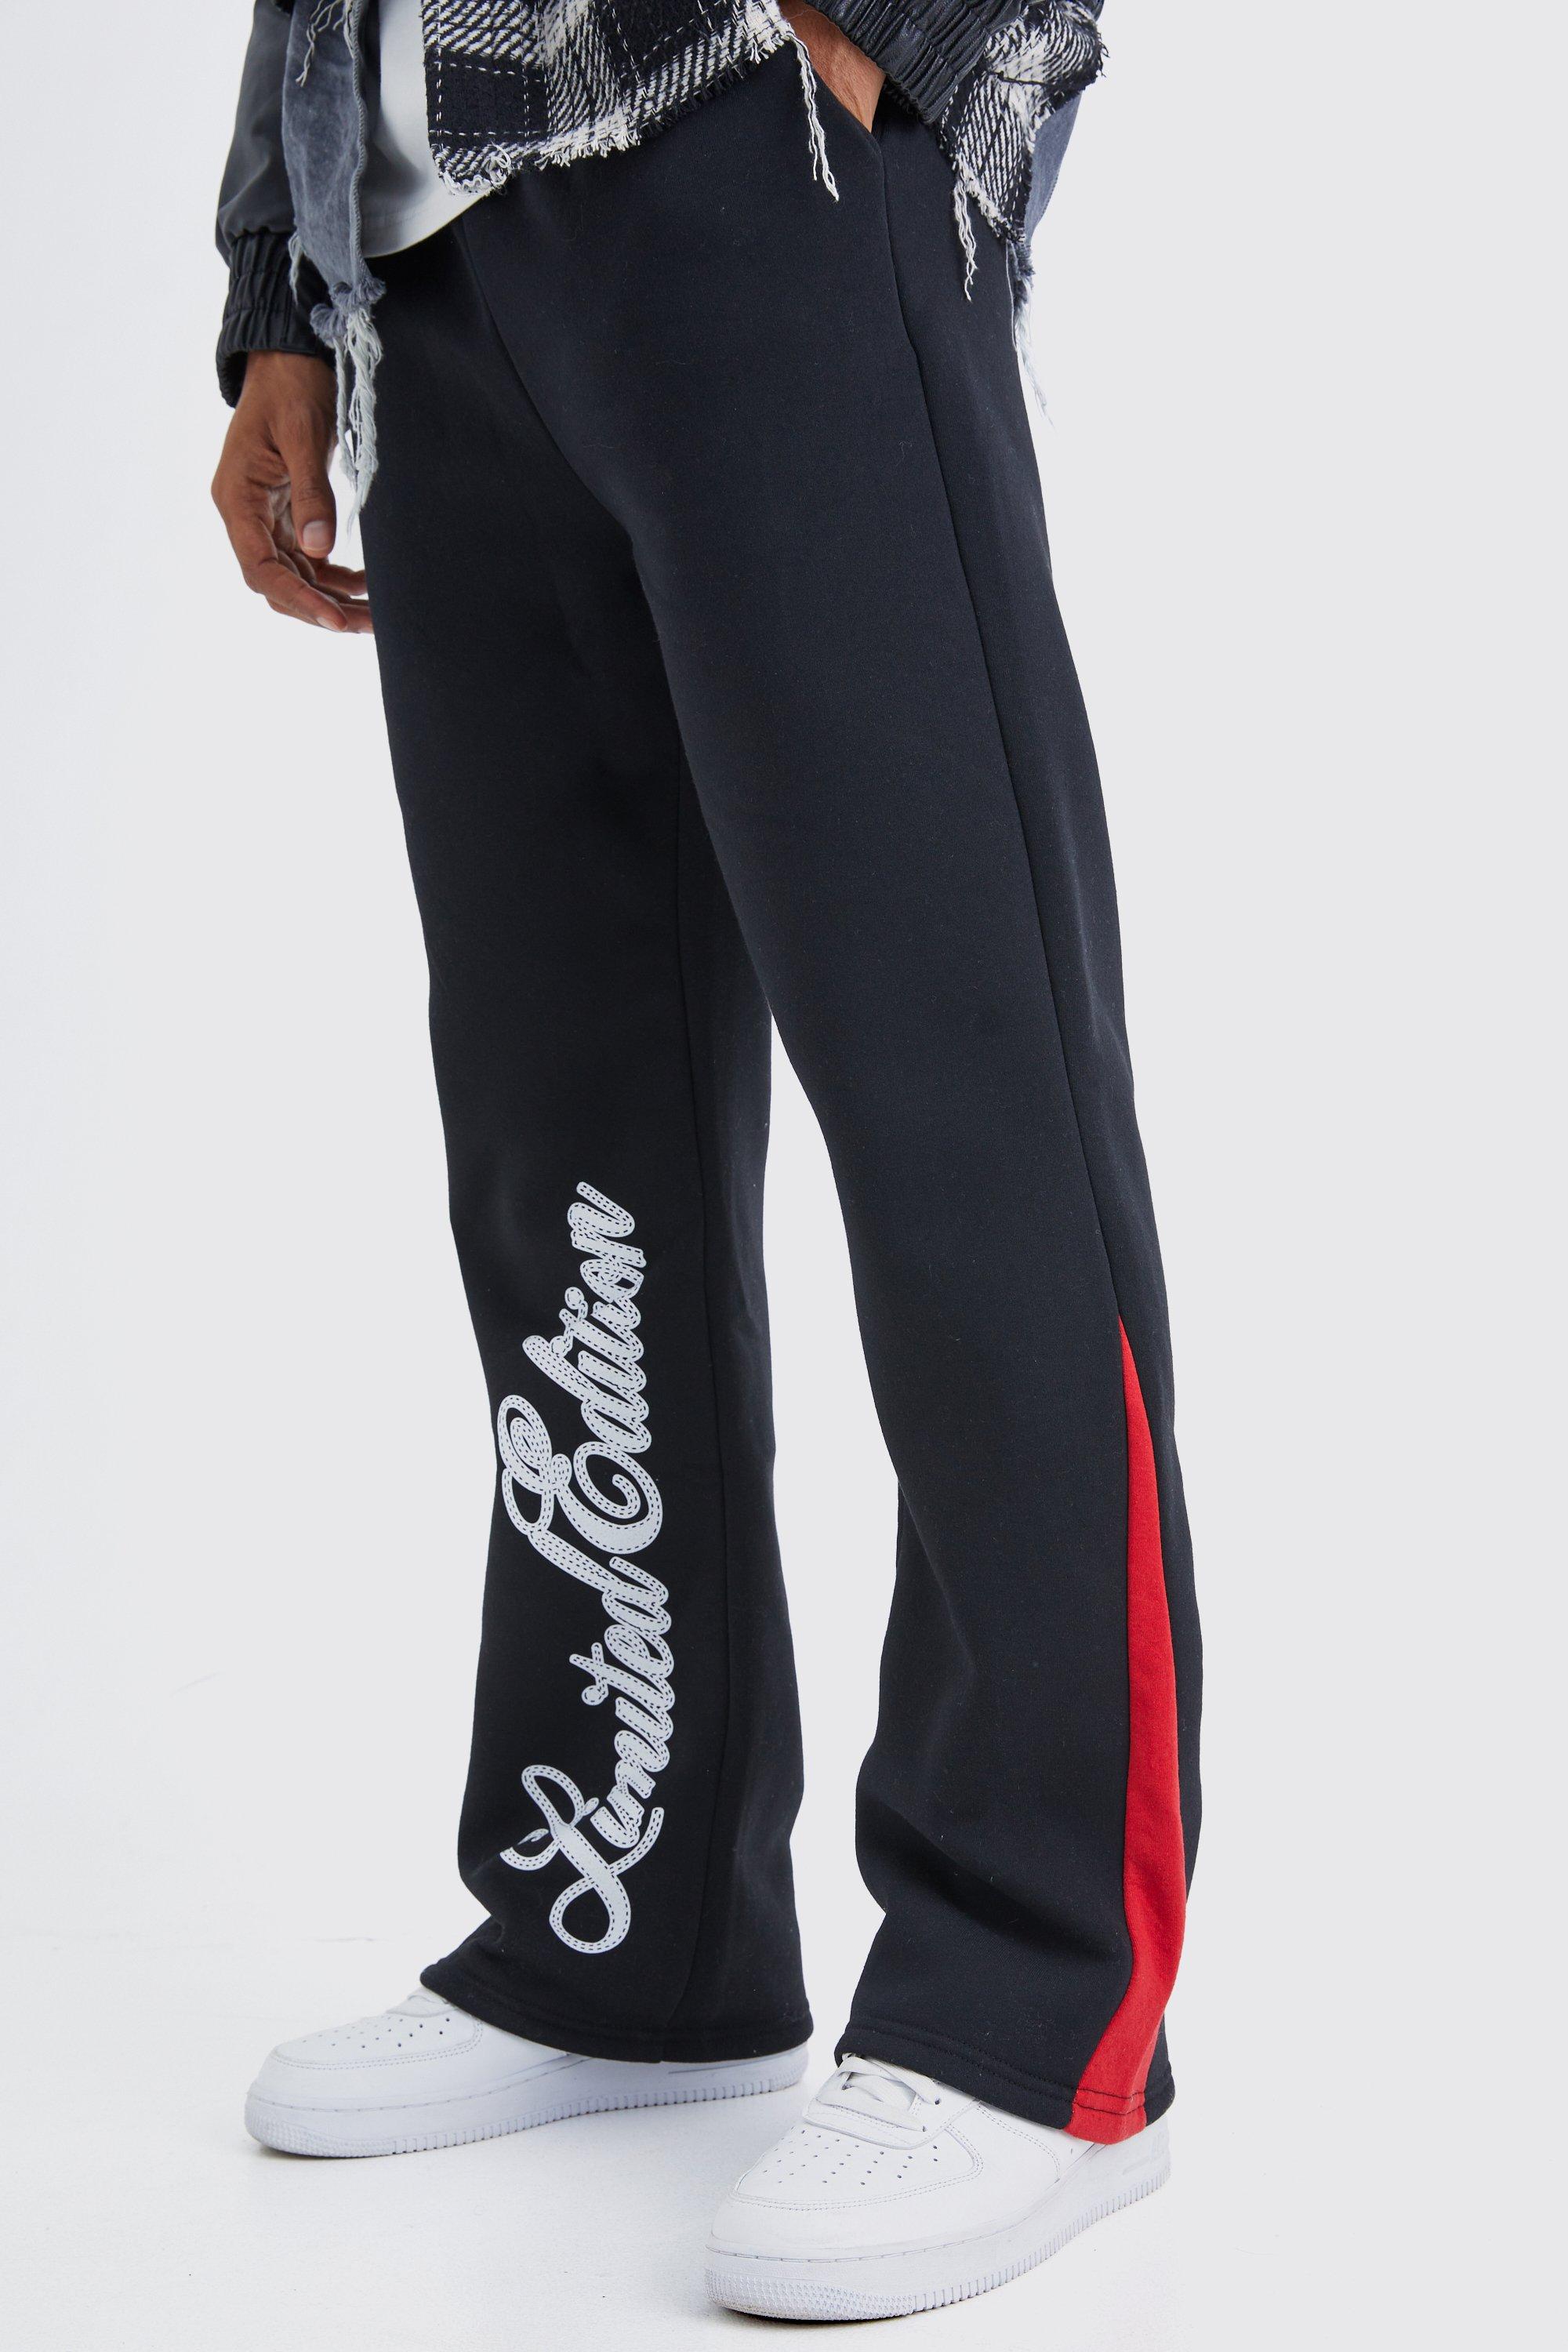 Image of Pantaloni tuta Limited Edition con inserti e scritta, Nero